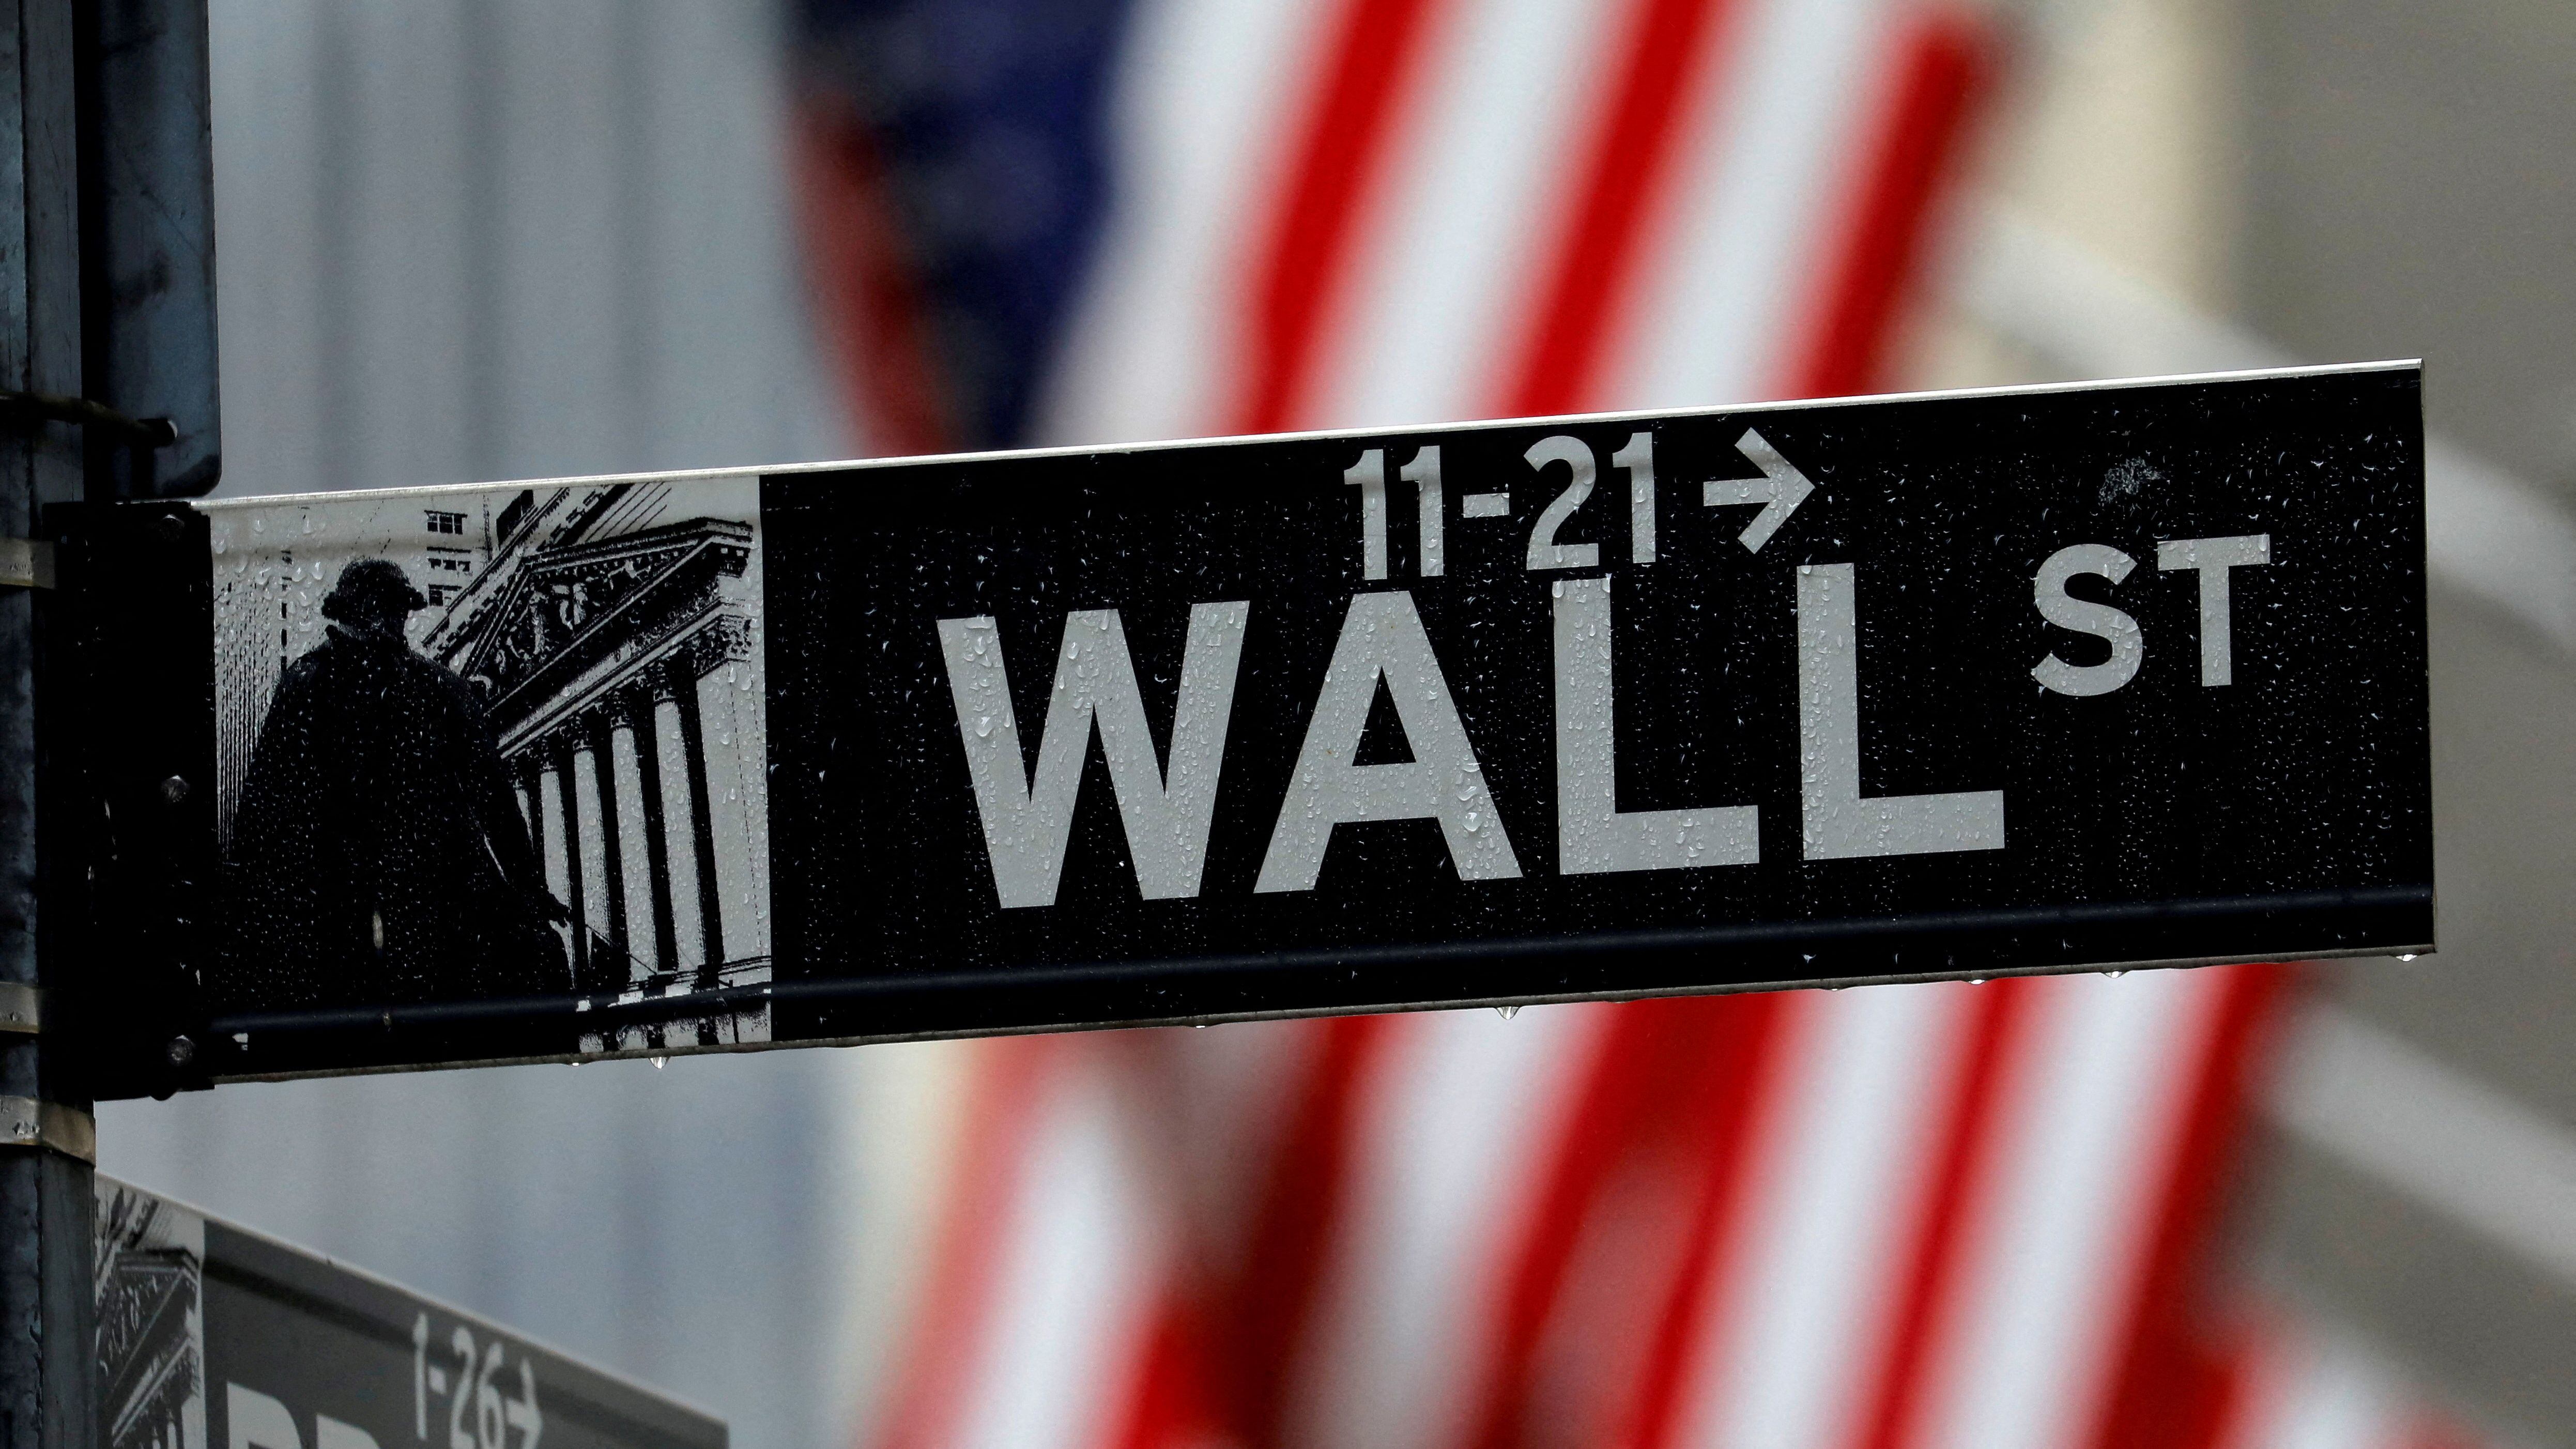 Un cartel de la calle Wall Street, en la esquina del New York Stock Exchange en Manhattan, Nueva York (REUTERS/Mike Segar/File Photo)